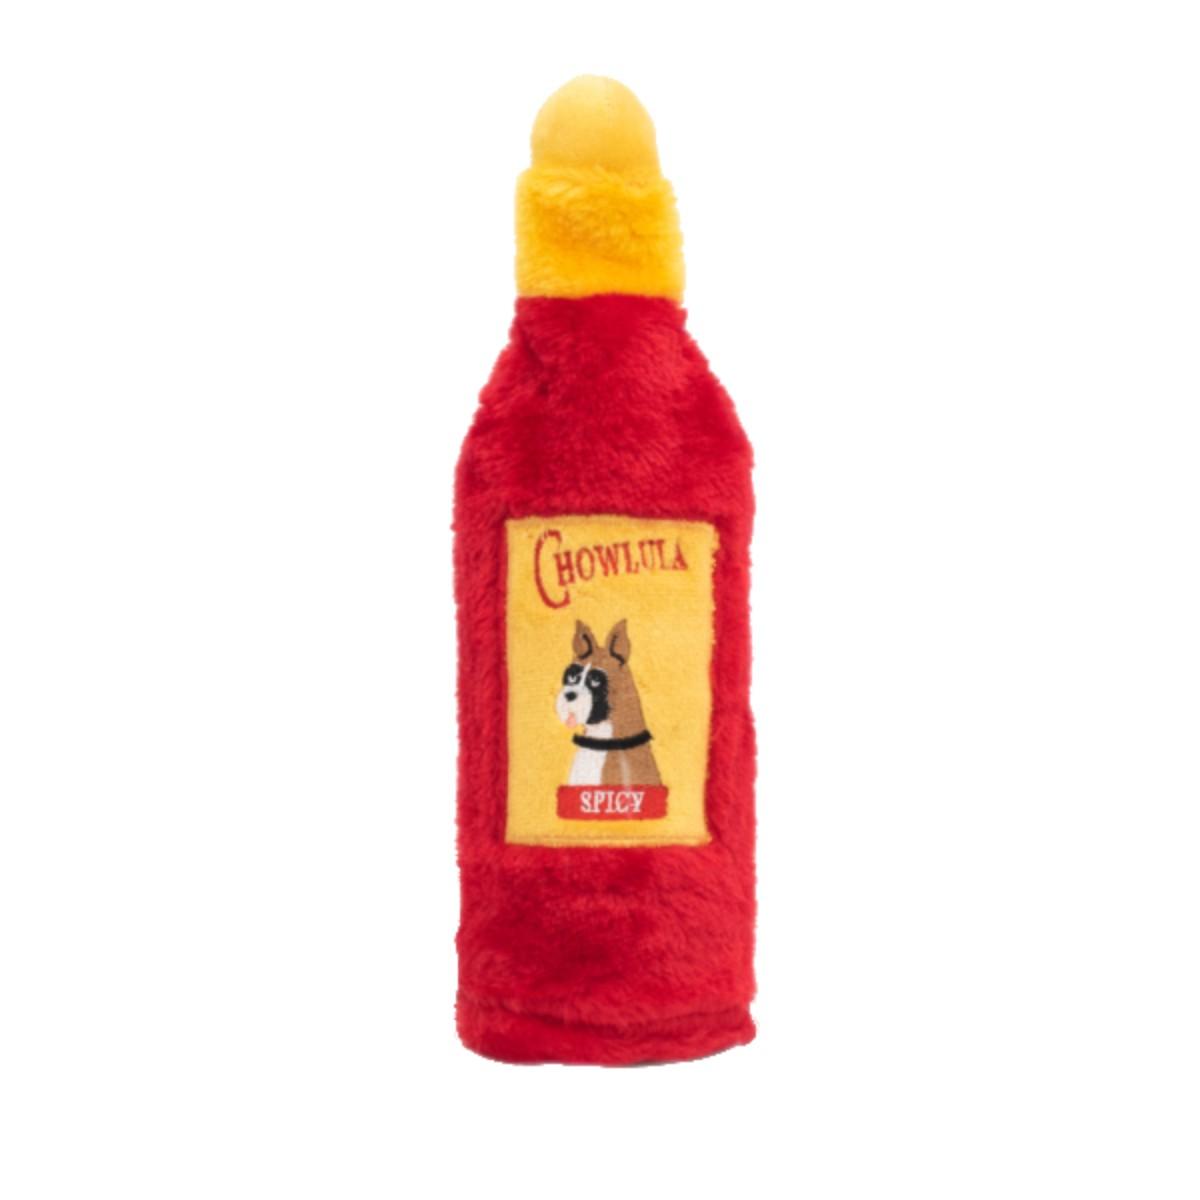 ZippyPaws Hot Sauce Crusherz Dog Toy - Chowlula